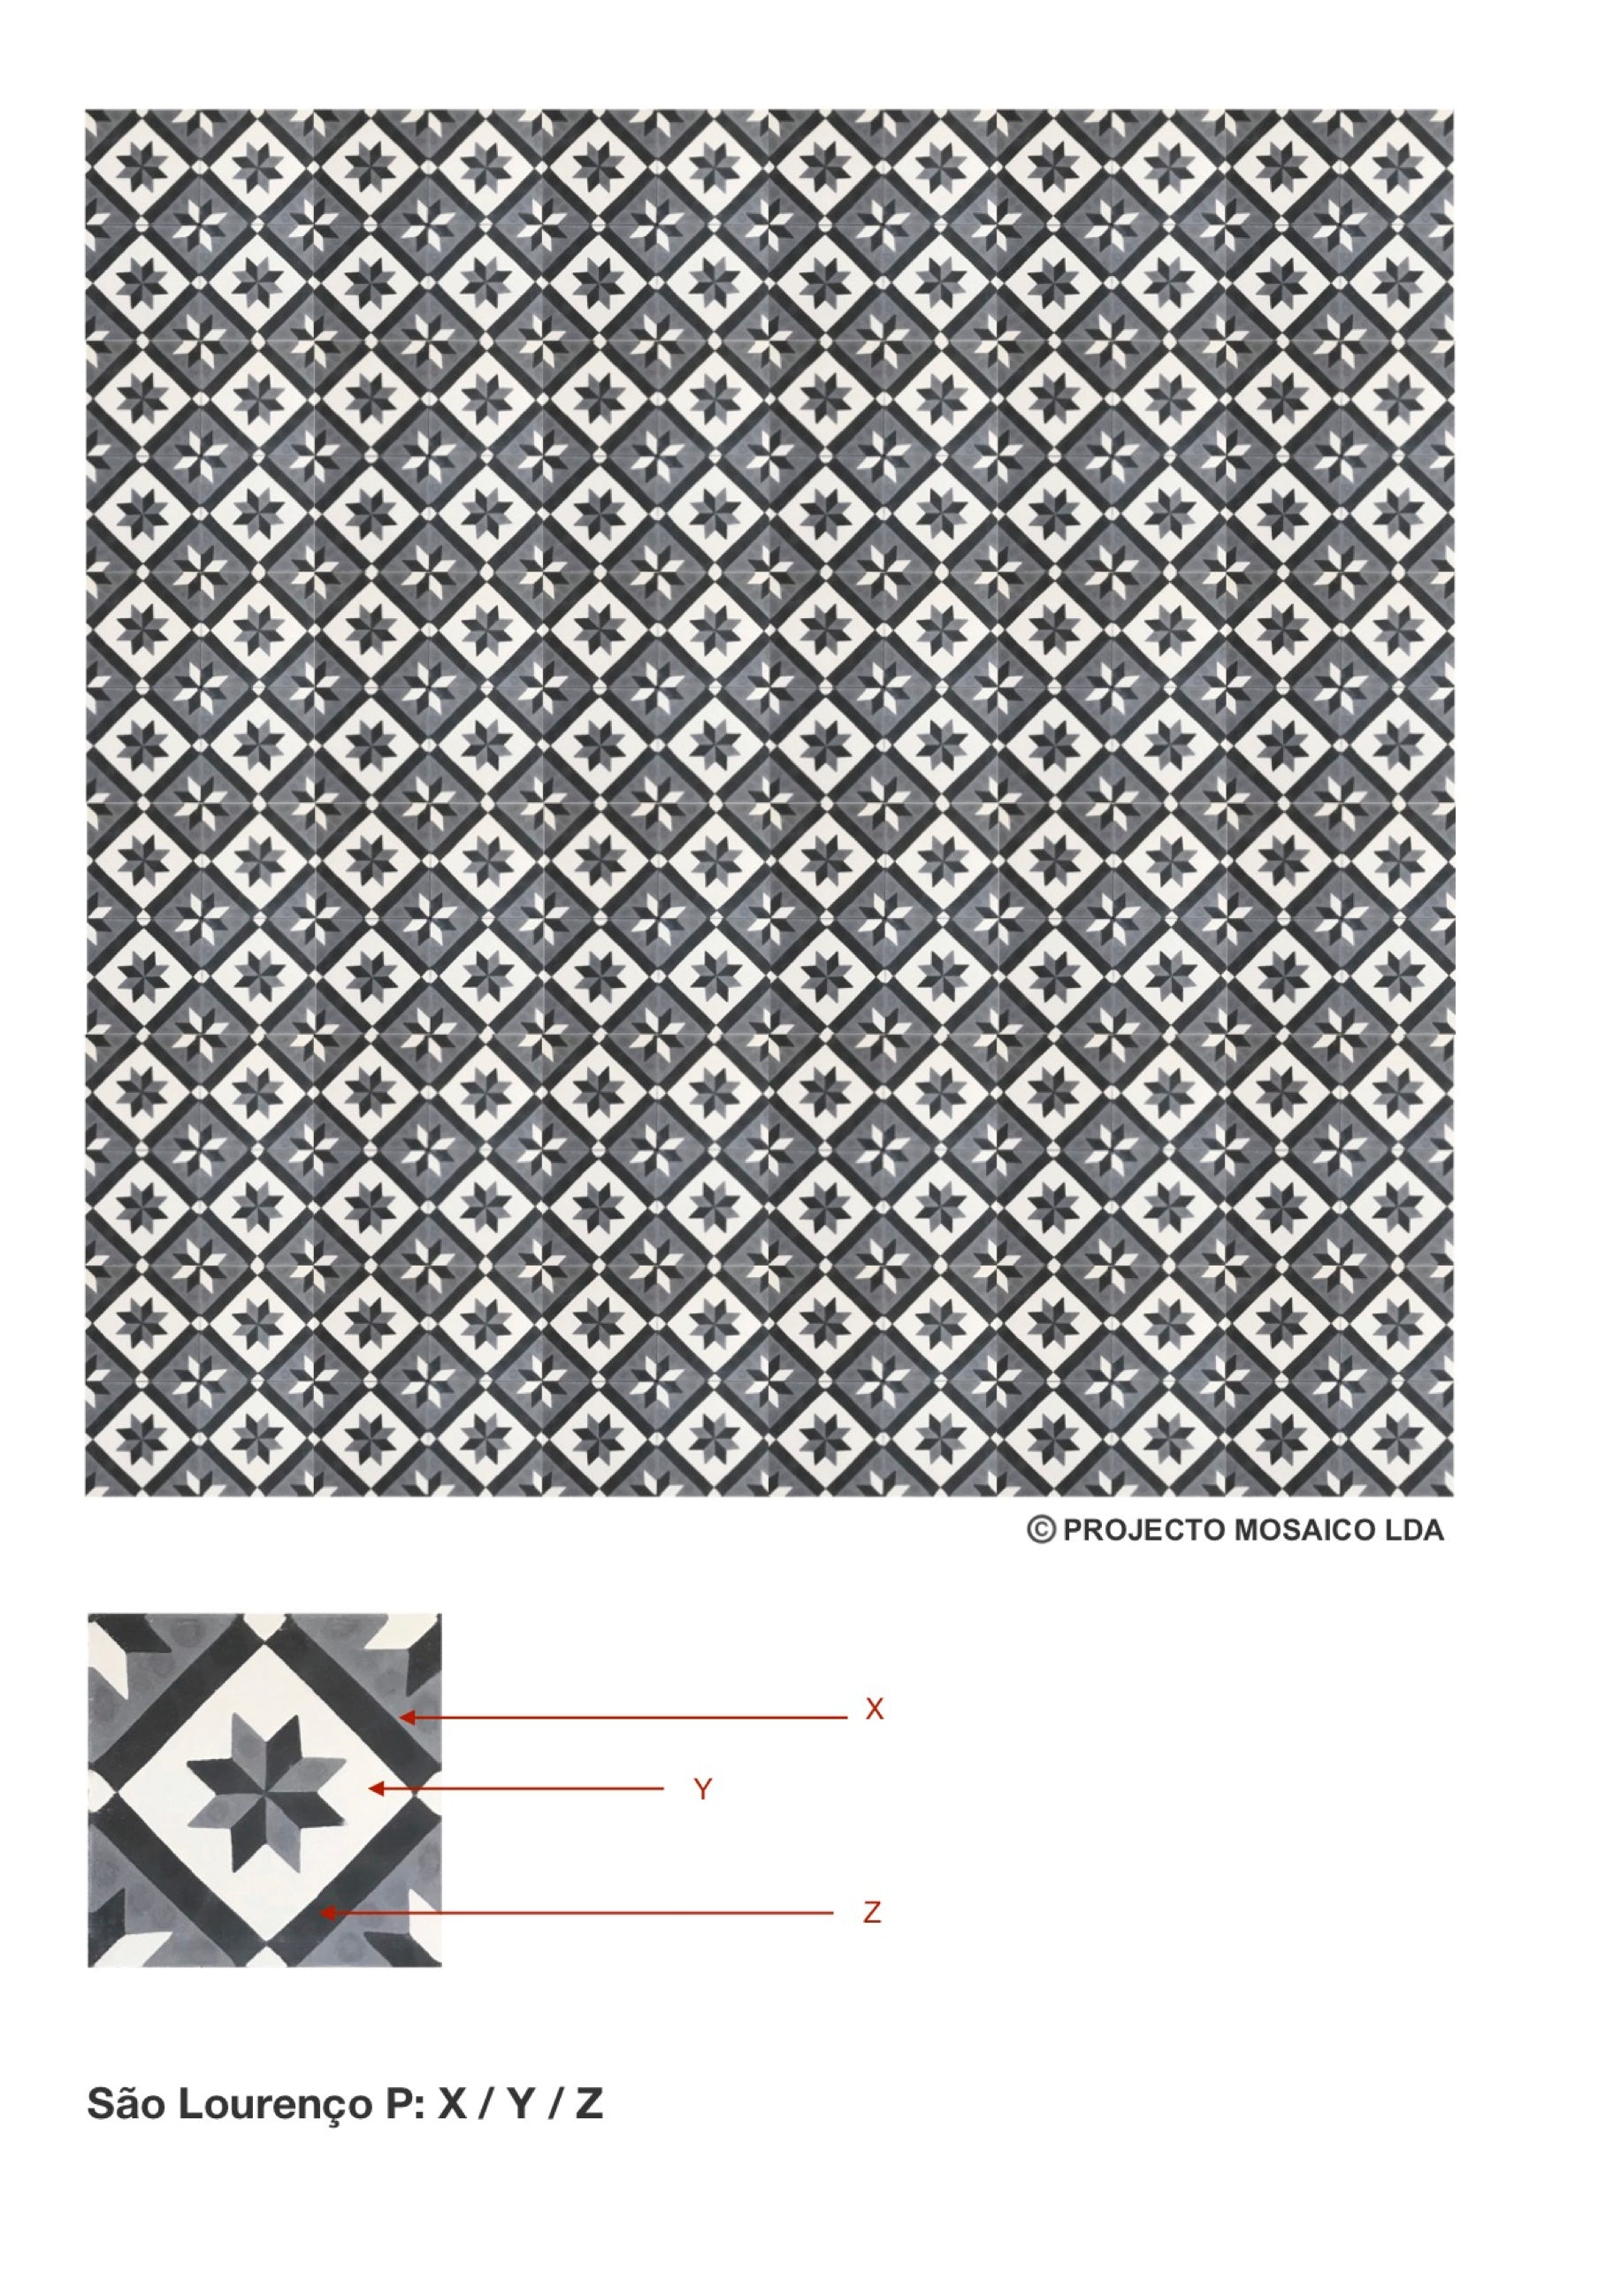 illustração de aplicação do mosaico hidráulico ref: São Lourenço P